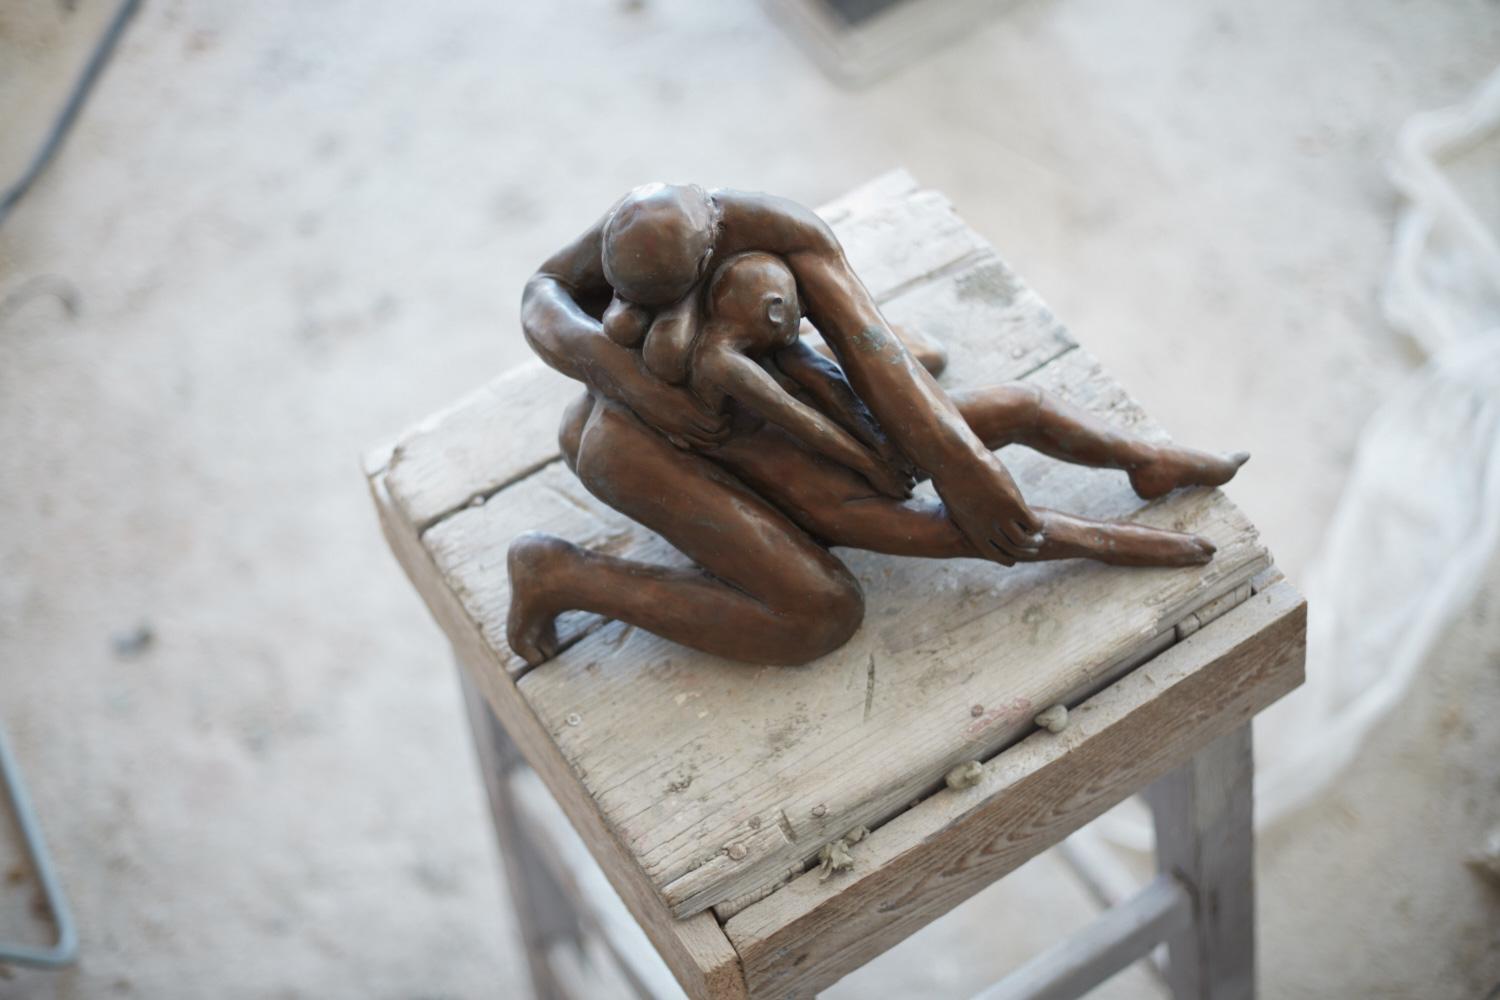 Pieta III - contemporary tabletop figurative bronze sculpture - Gold Nude Sculpture by Lorenzo Vignoli